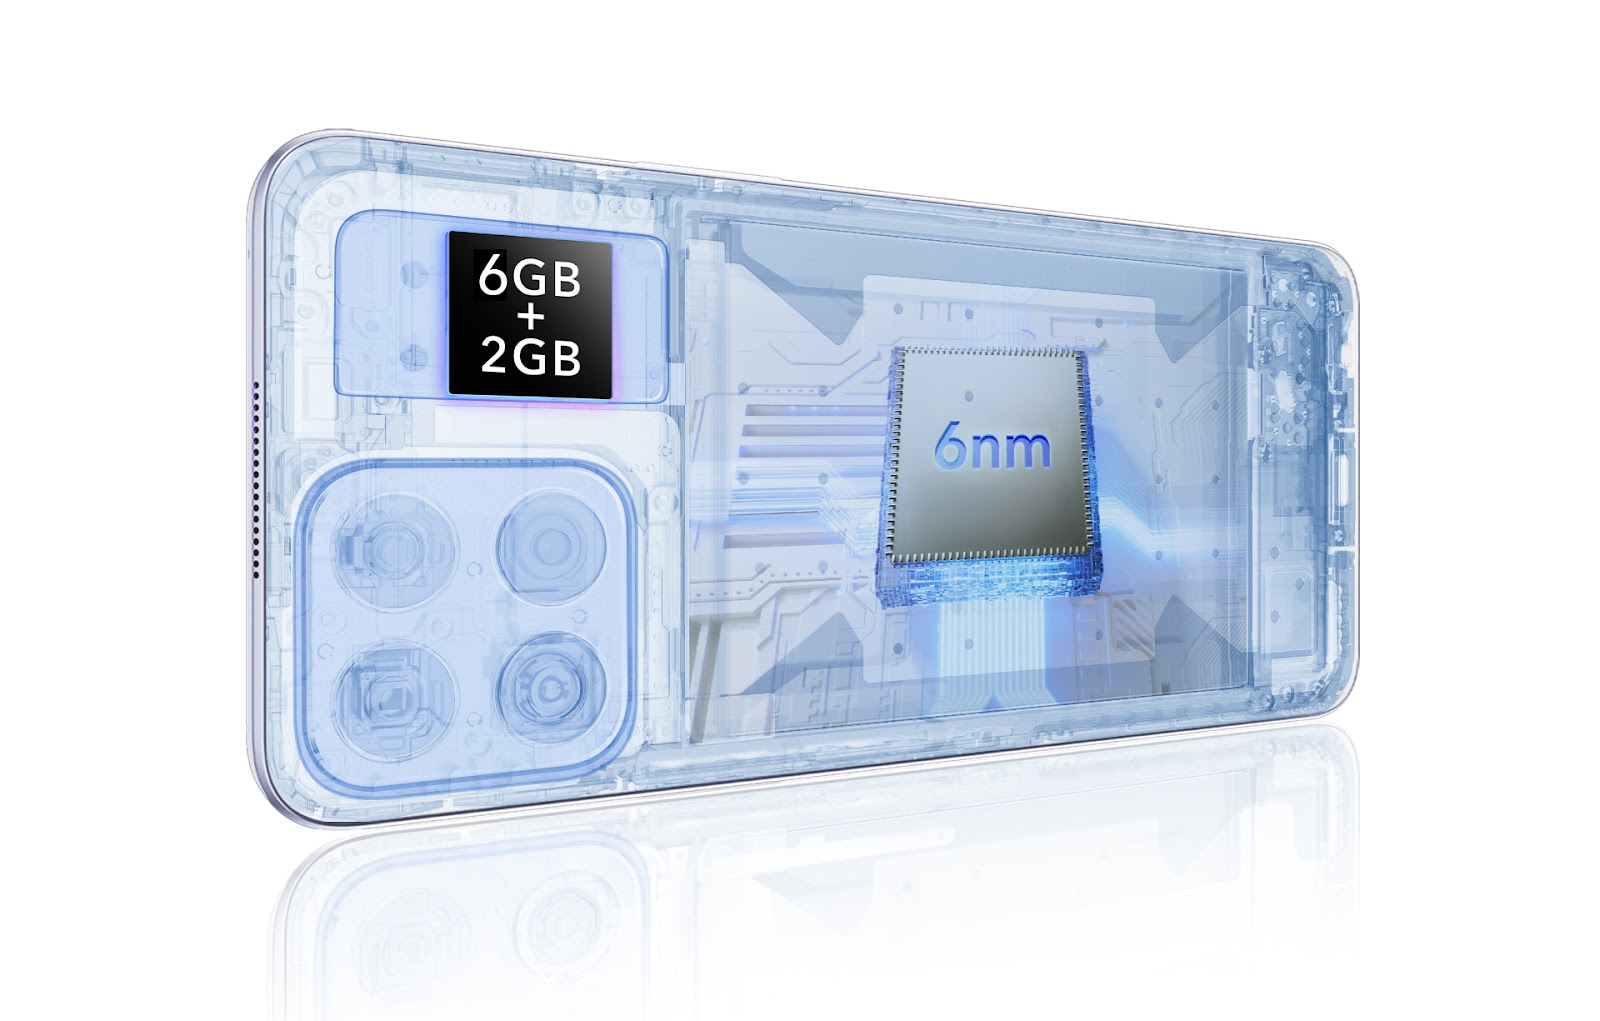 Honor X8 gama media precio especificaciones smartphone cumplidor que  estabas buscando, TECNOLOGIA